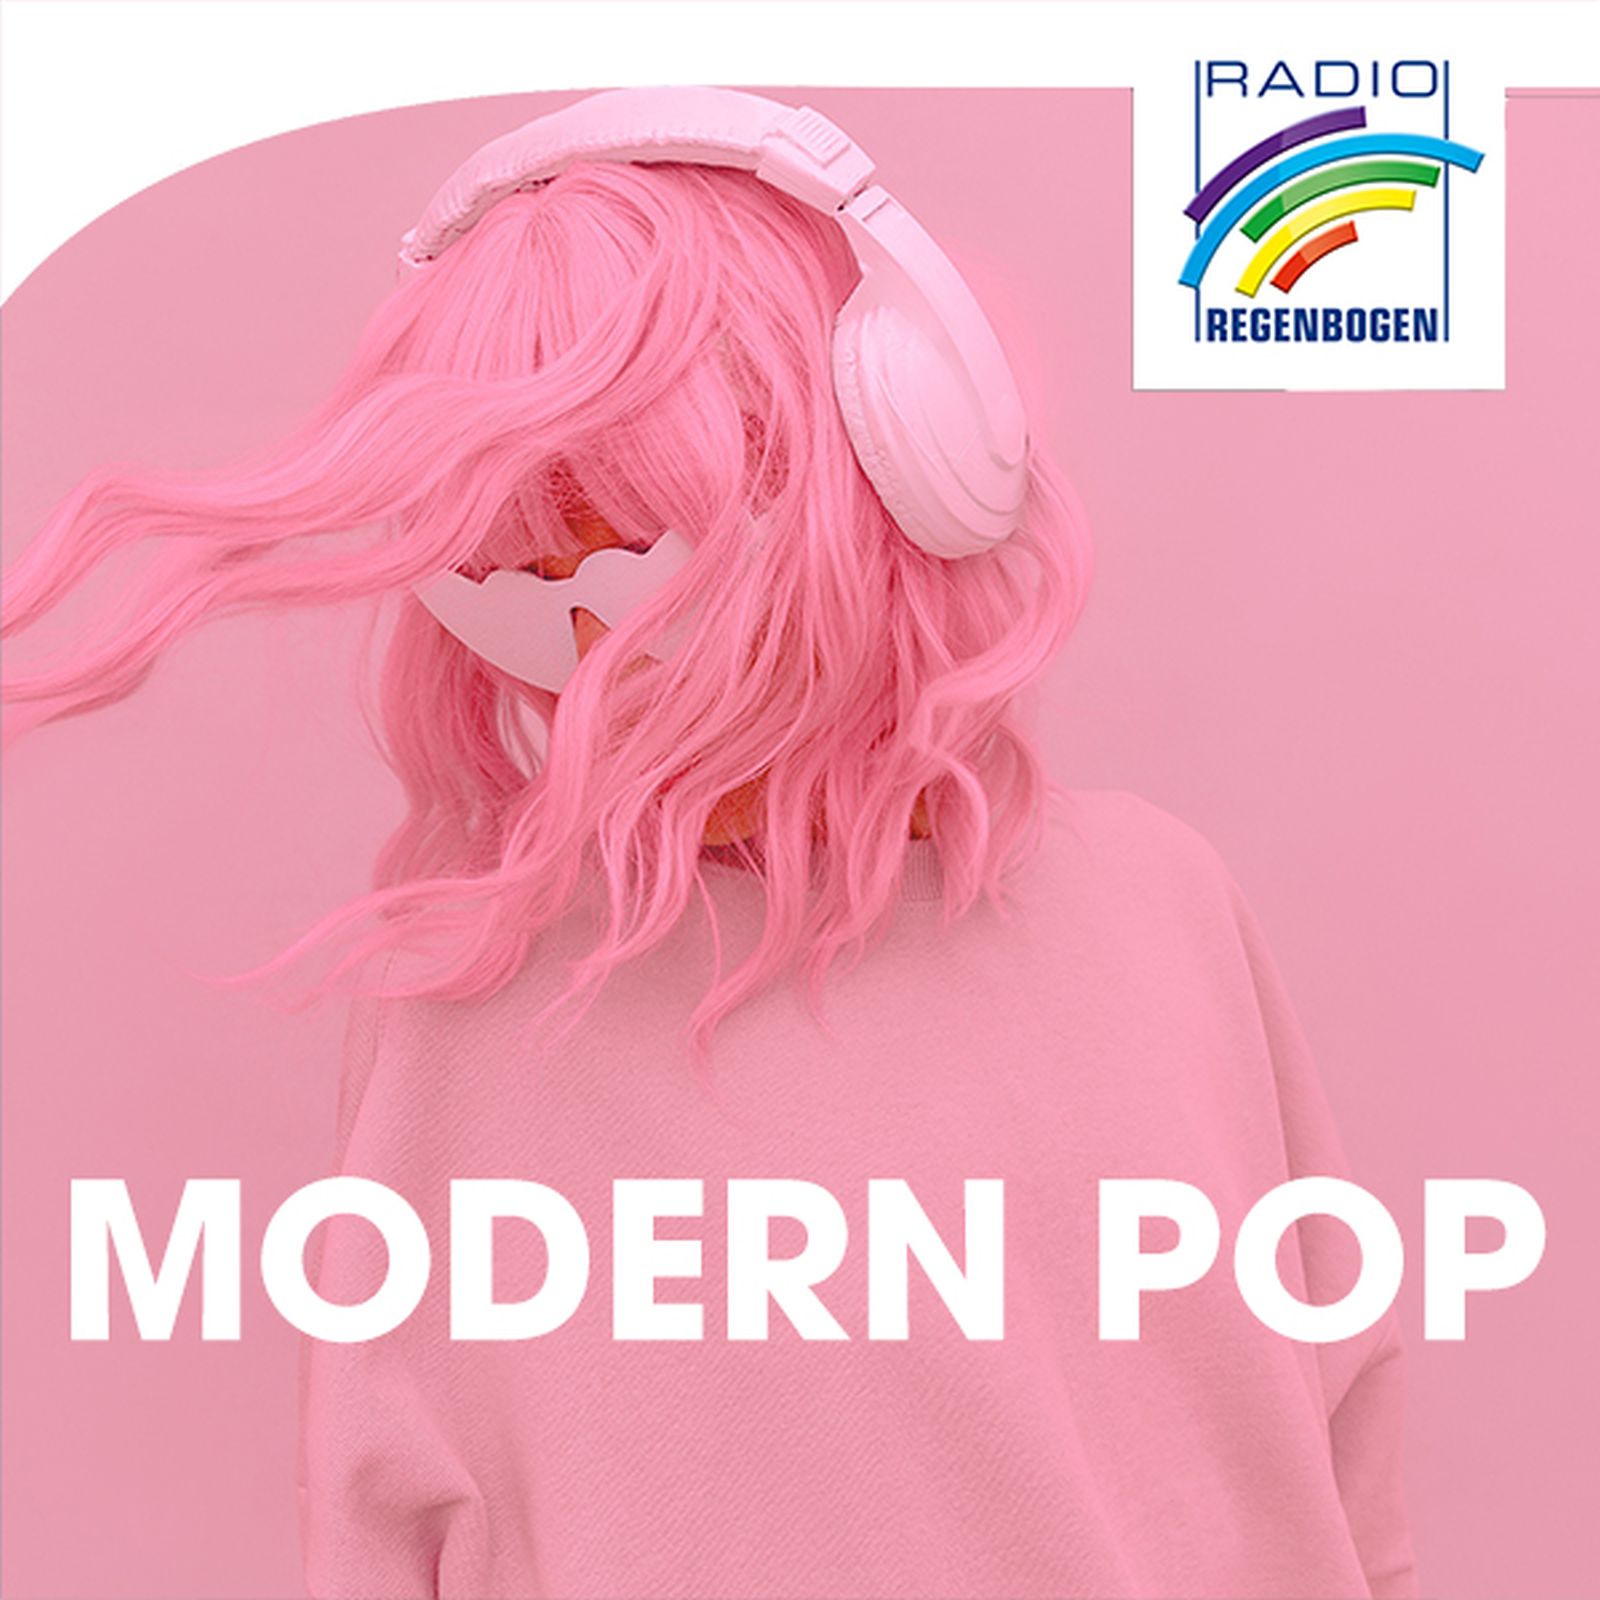 Radio Regenbogen - Modern Pop